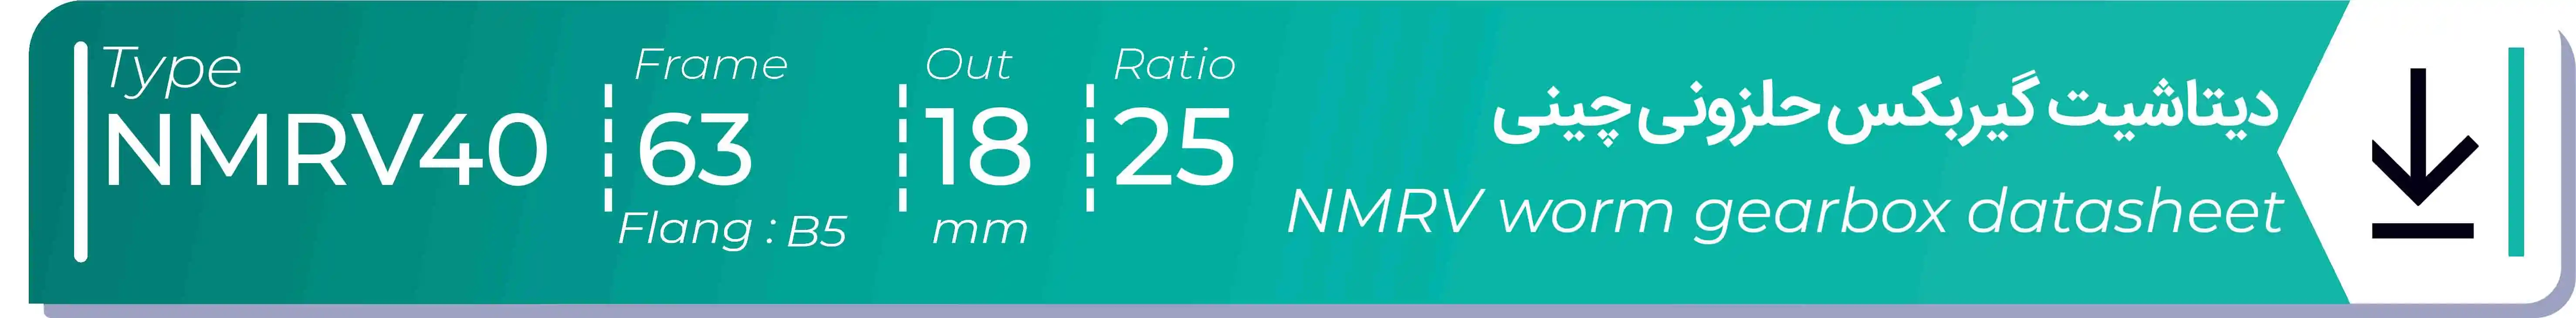  دیتاشیت و مشخصات فنی گیربکس حلزونی چینی   NMRV40  -  با خروجی 18- میلی متر و نسبت25 و فریم 63